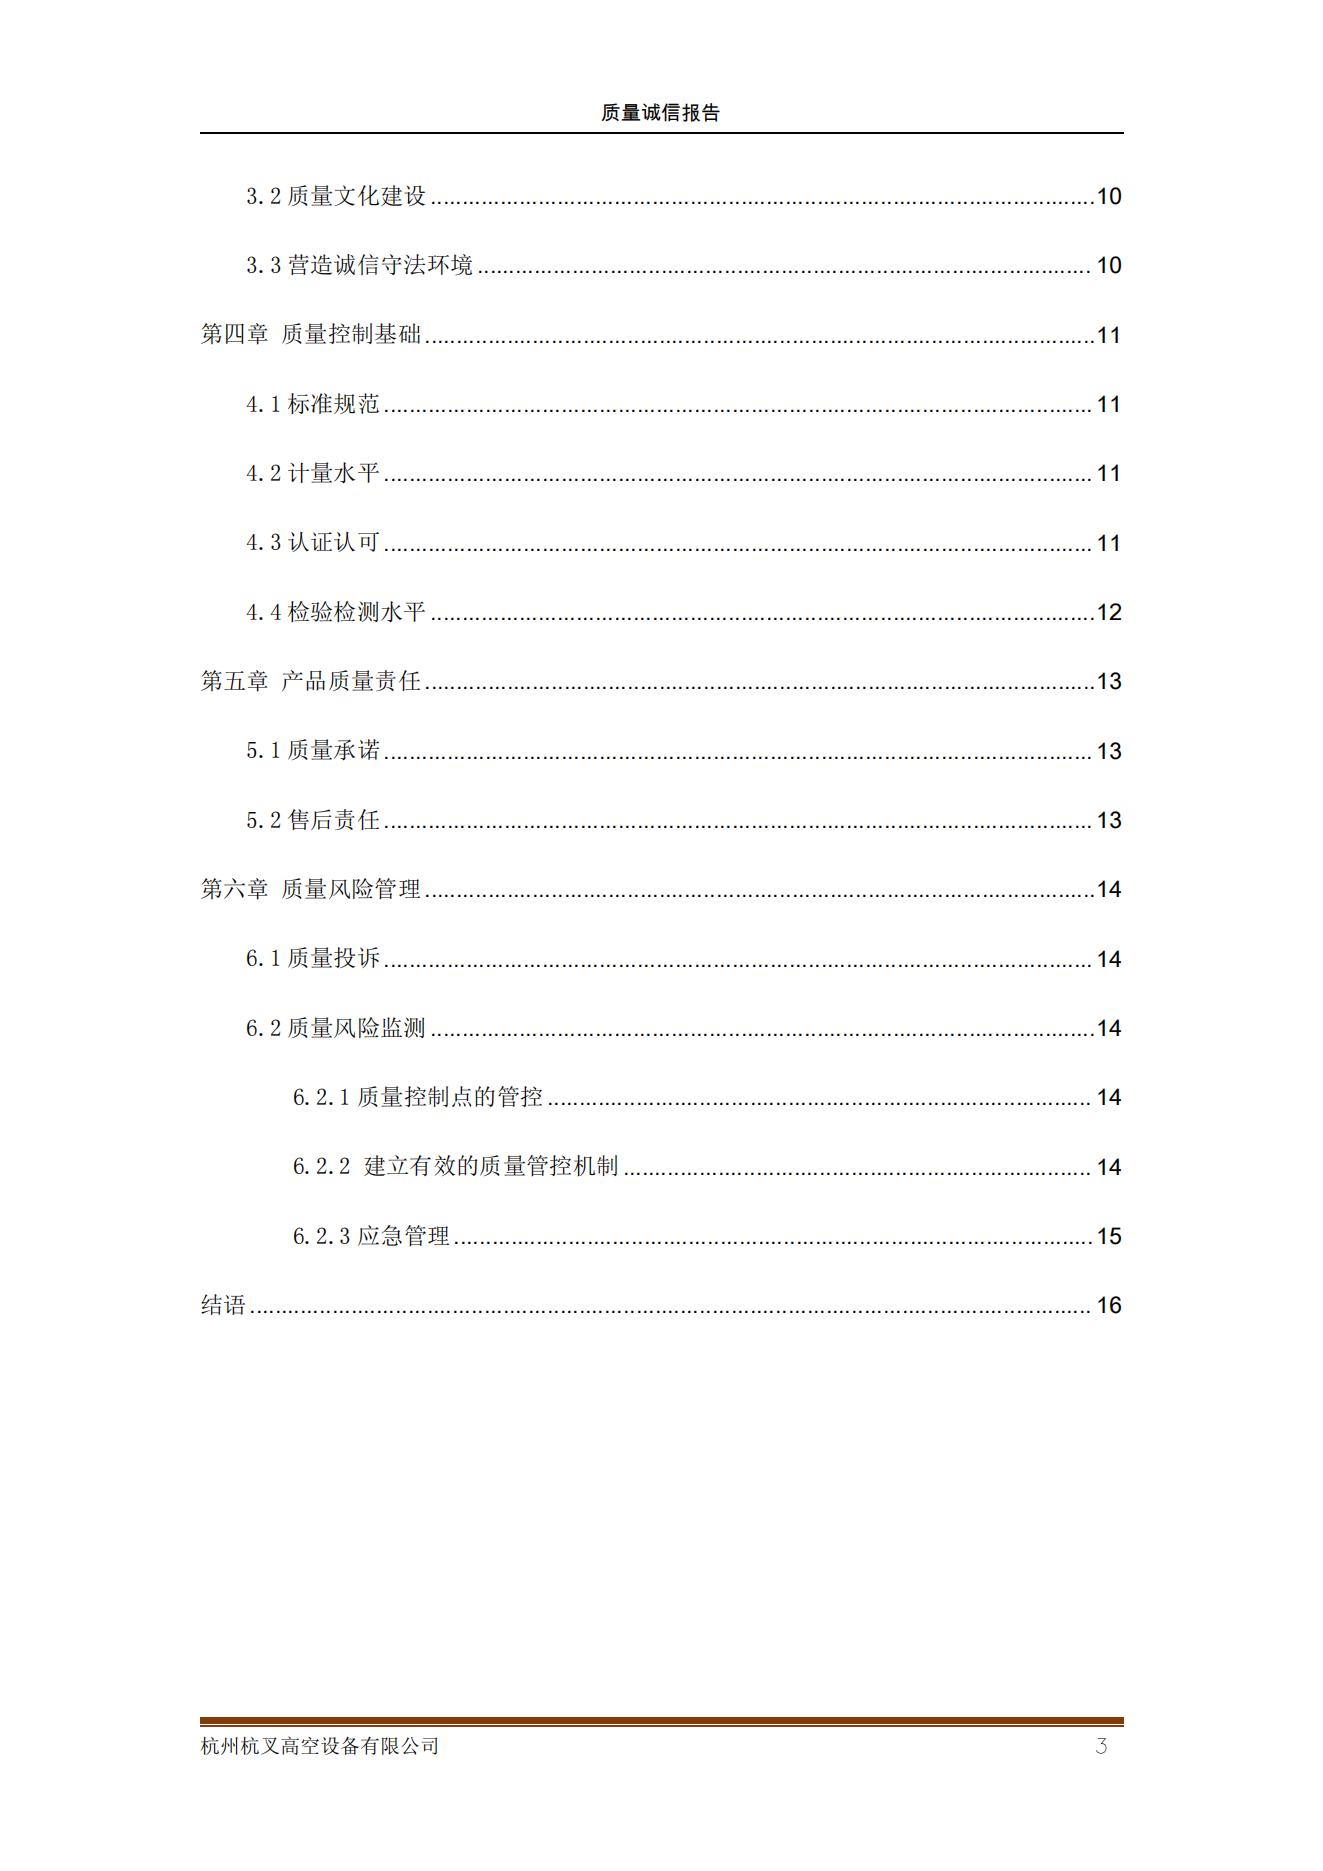 杭州杭叉高空設備公司2021年質量誠信報告(圖3)